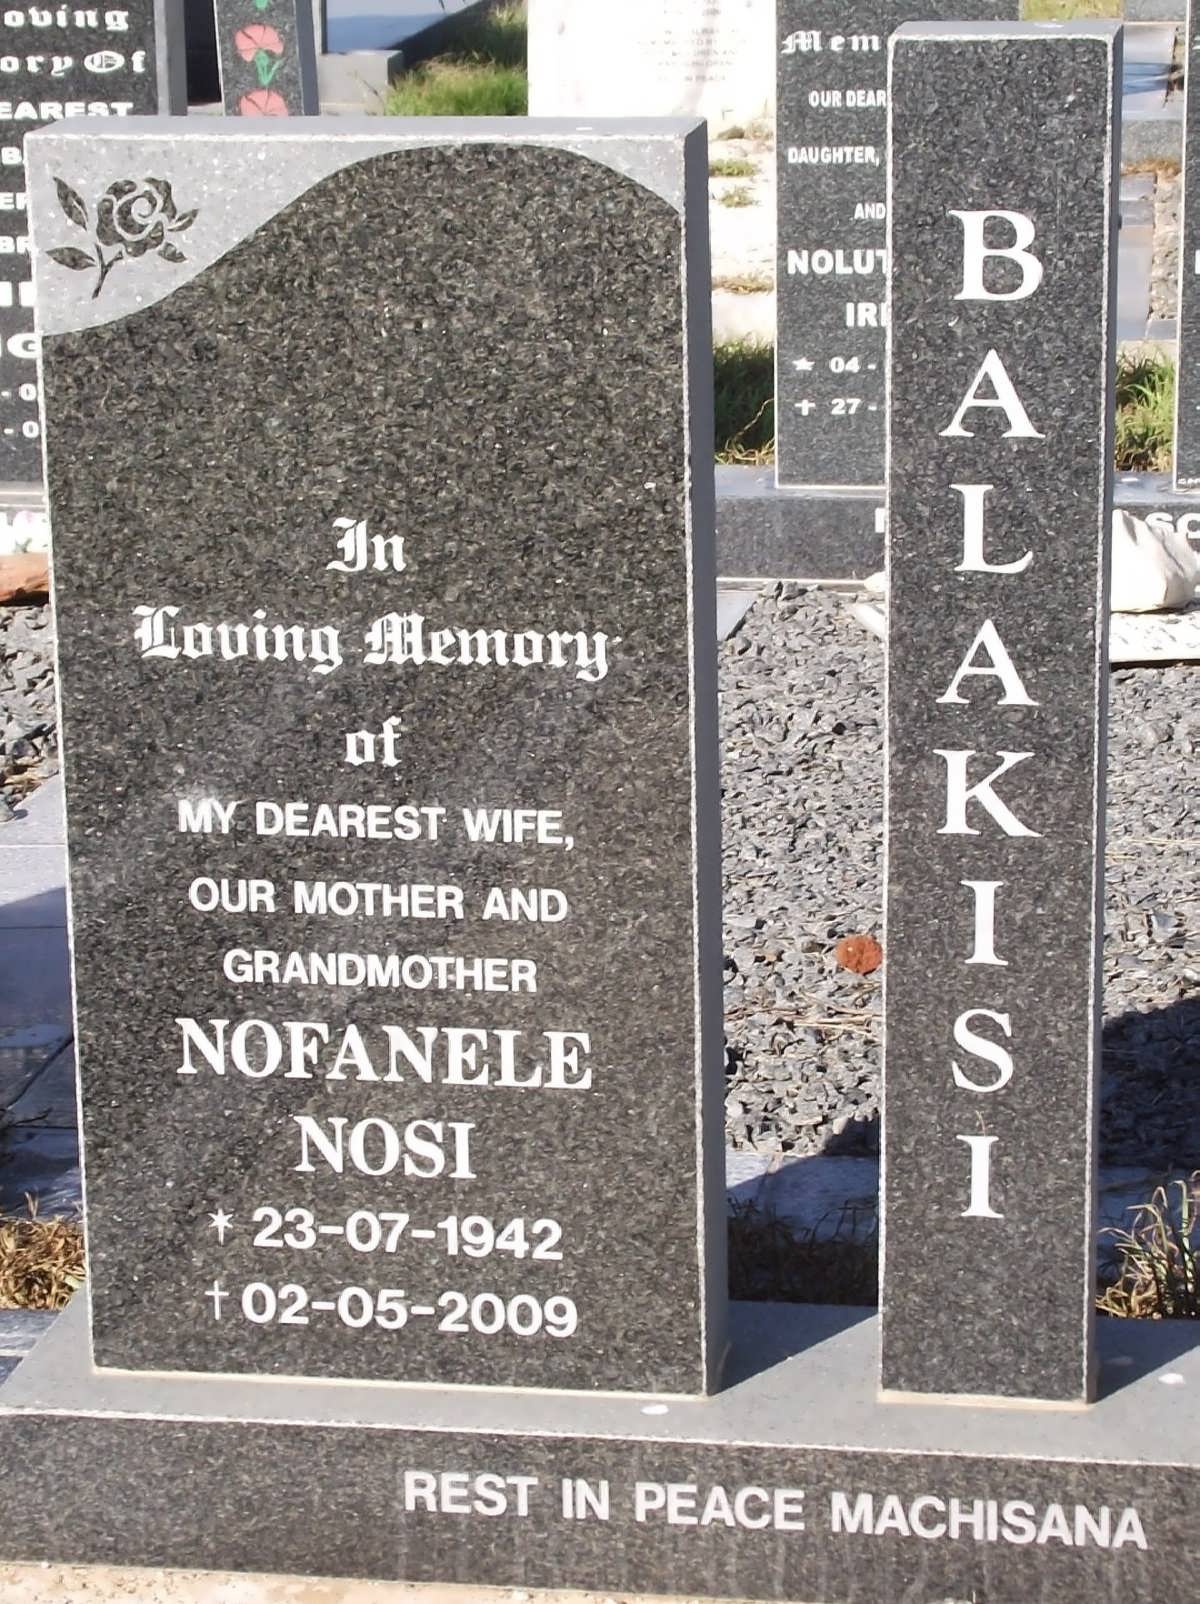 BALAKISI Nofanele Nosi 1942-2009